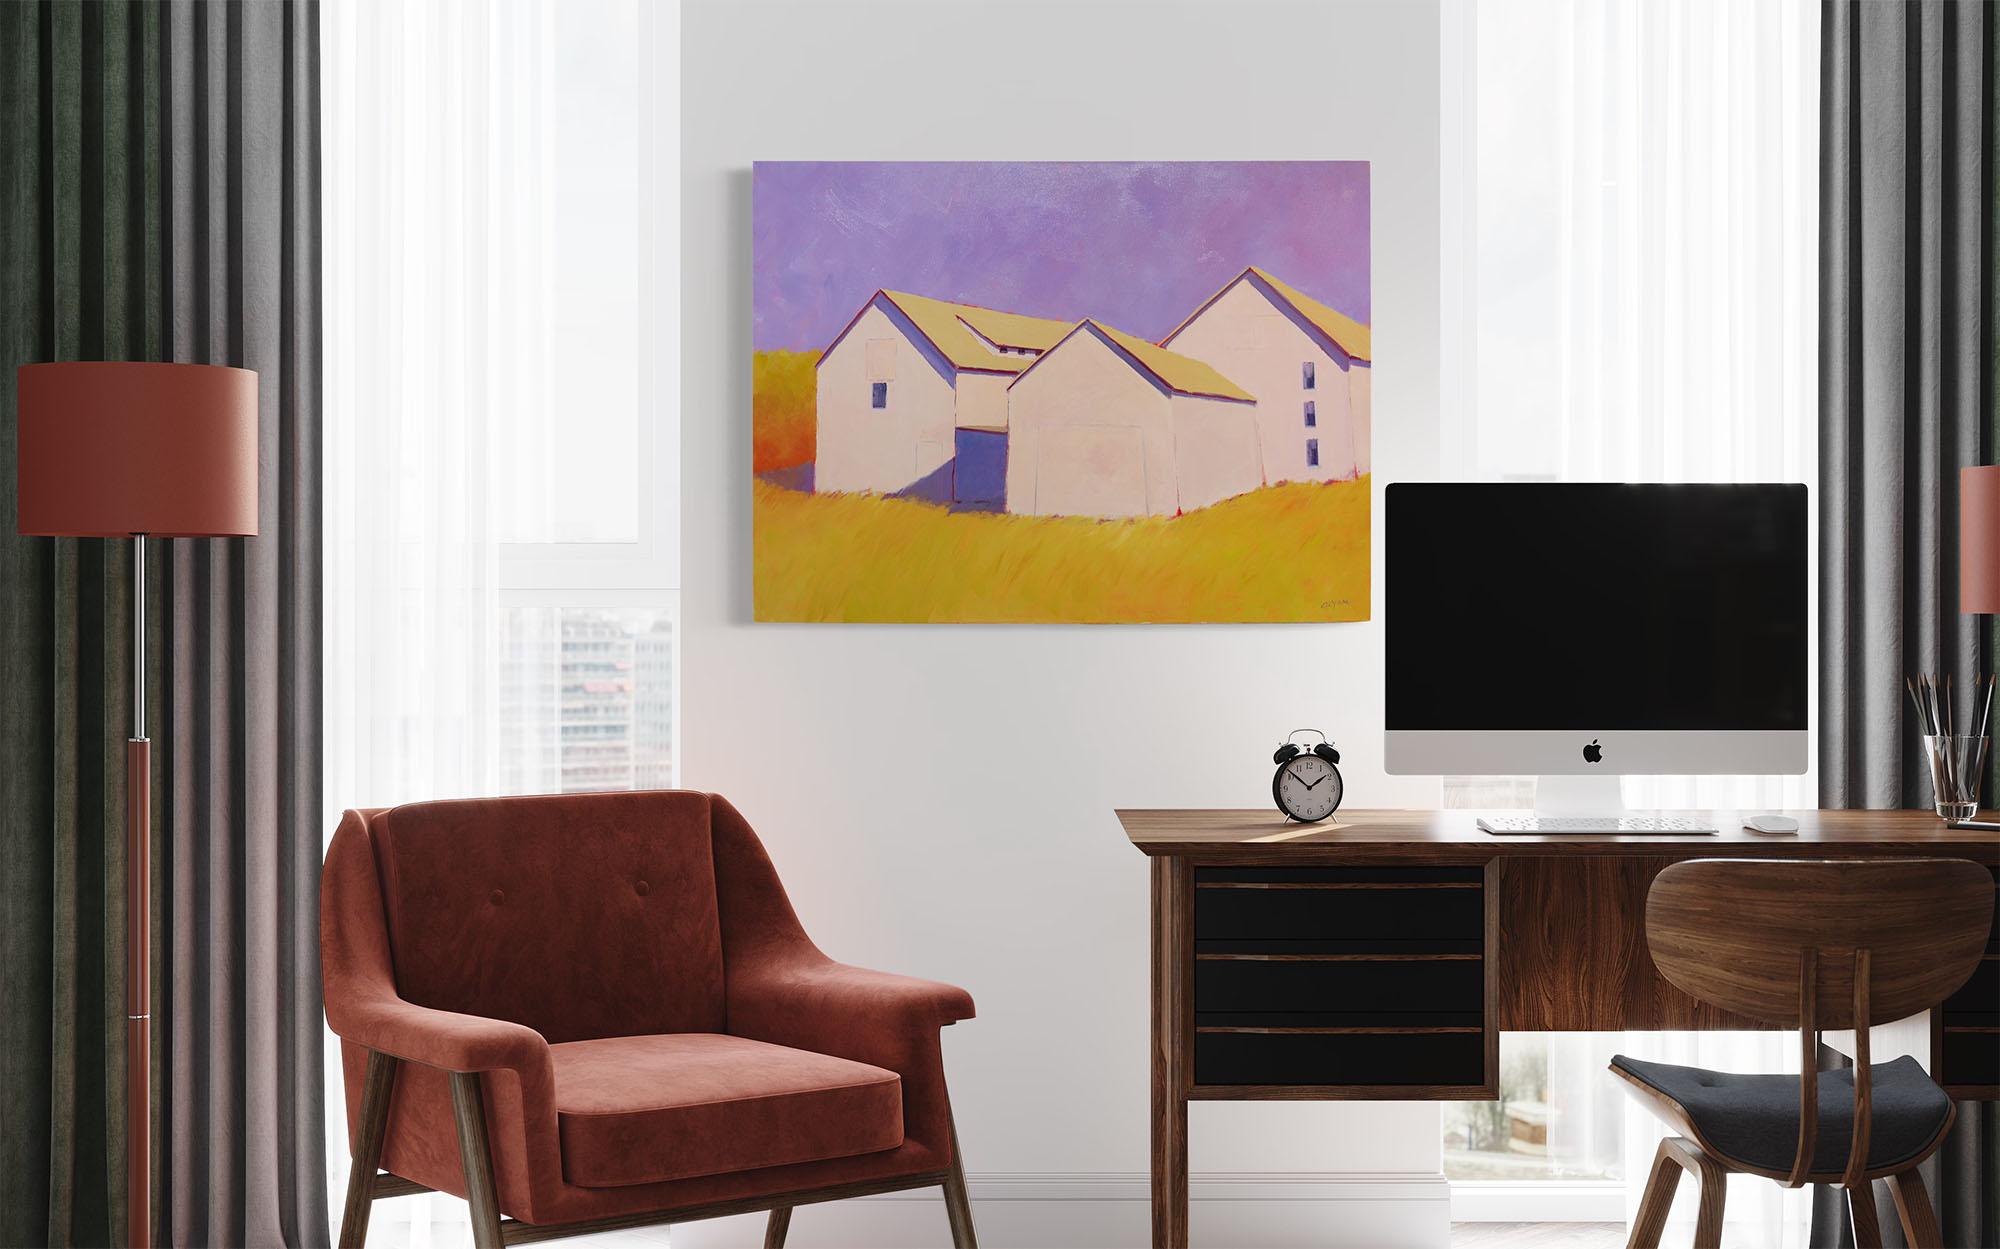 Dieses farbenfrohe, zeitgenössische Landschaftsgemälde von Carol Young zeichnet sich durch eine warme, lebendige Farbpalette aus und zeigt drei Scheunen in einem goldgelben Feld vor einem kontrastreichen hellvioletten Himmel. Die Scheunen werfen